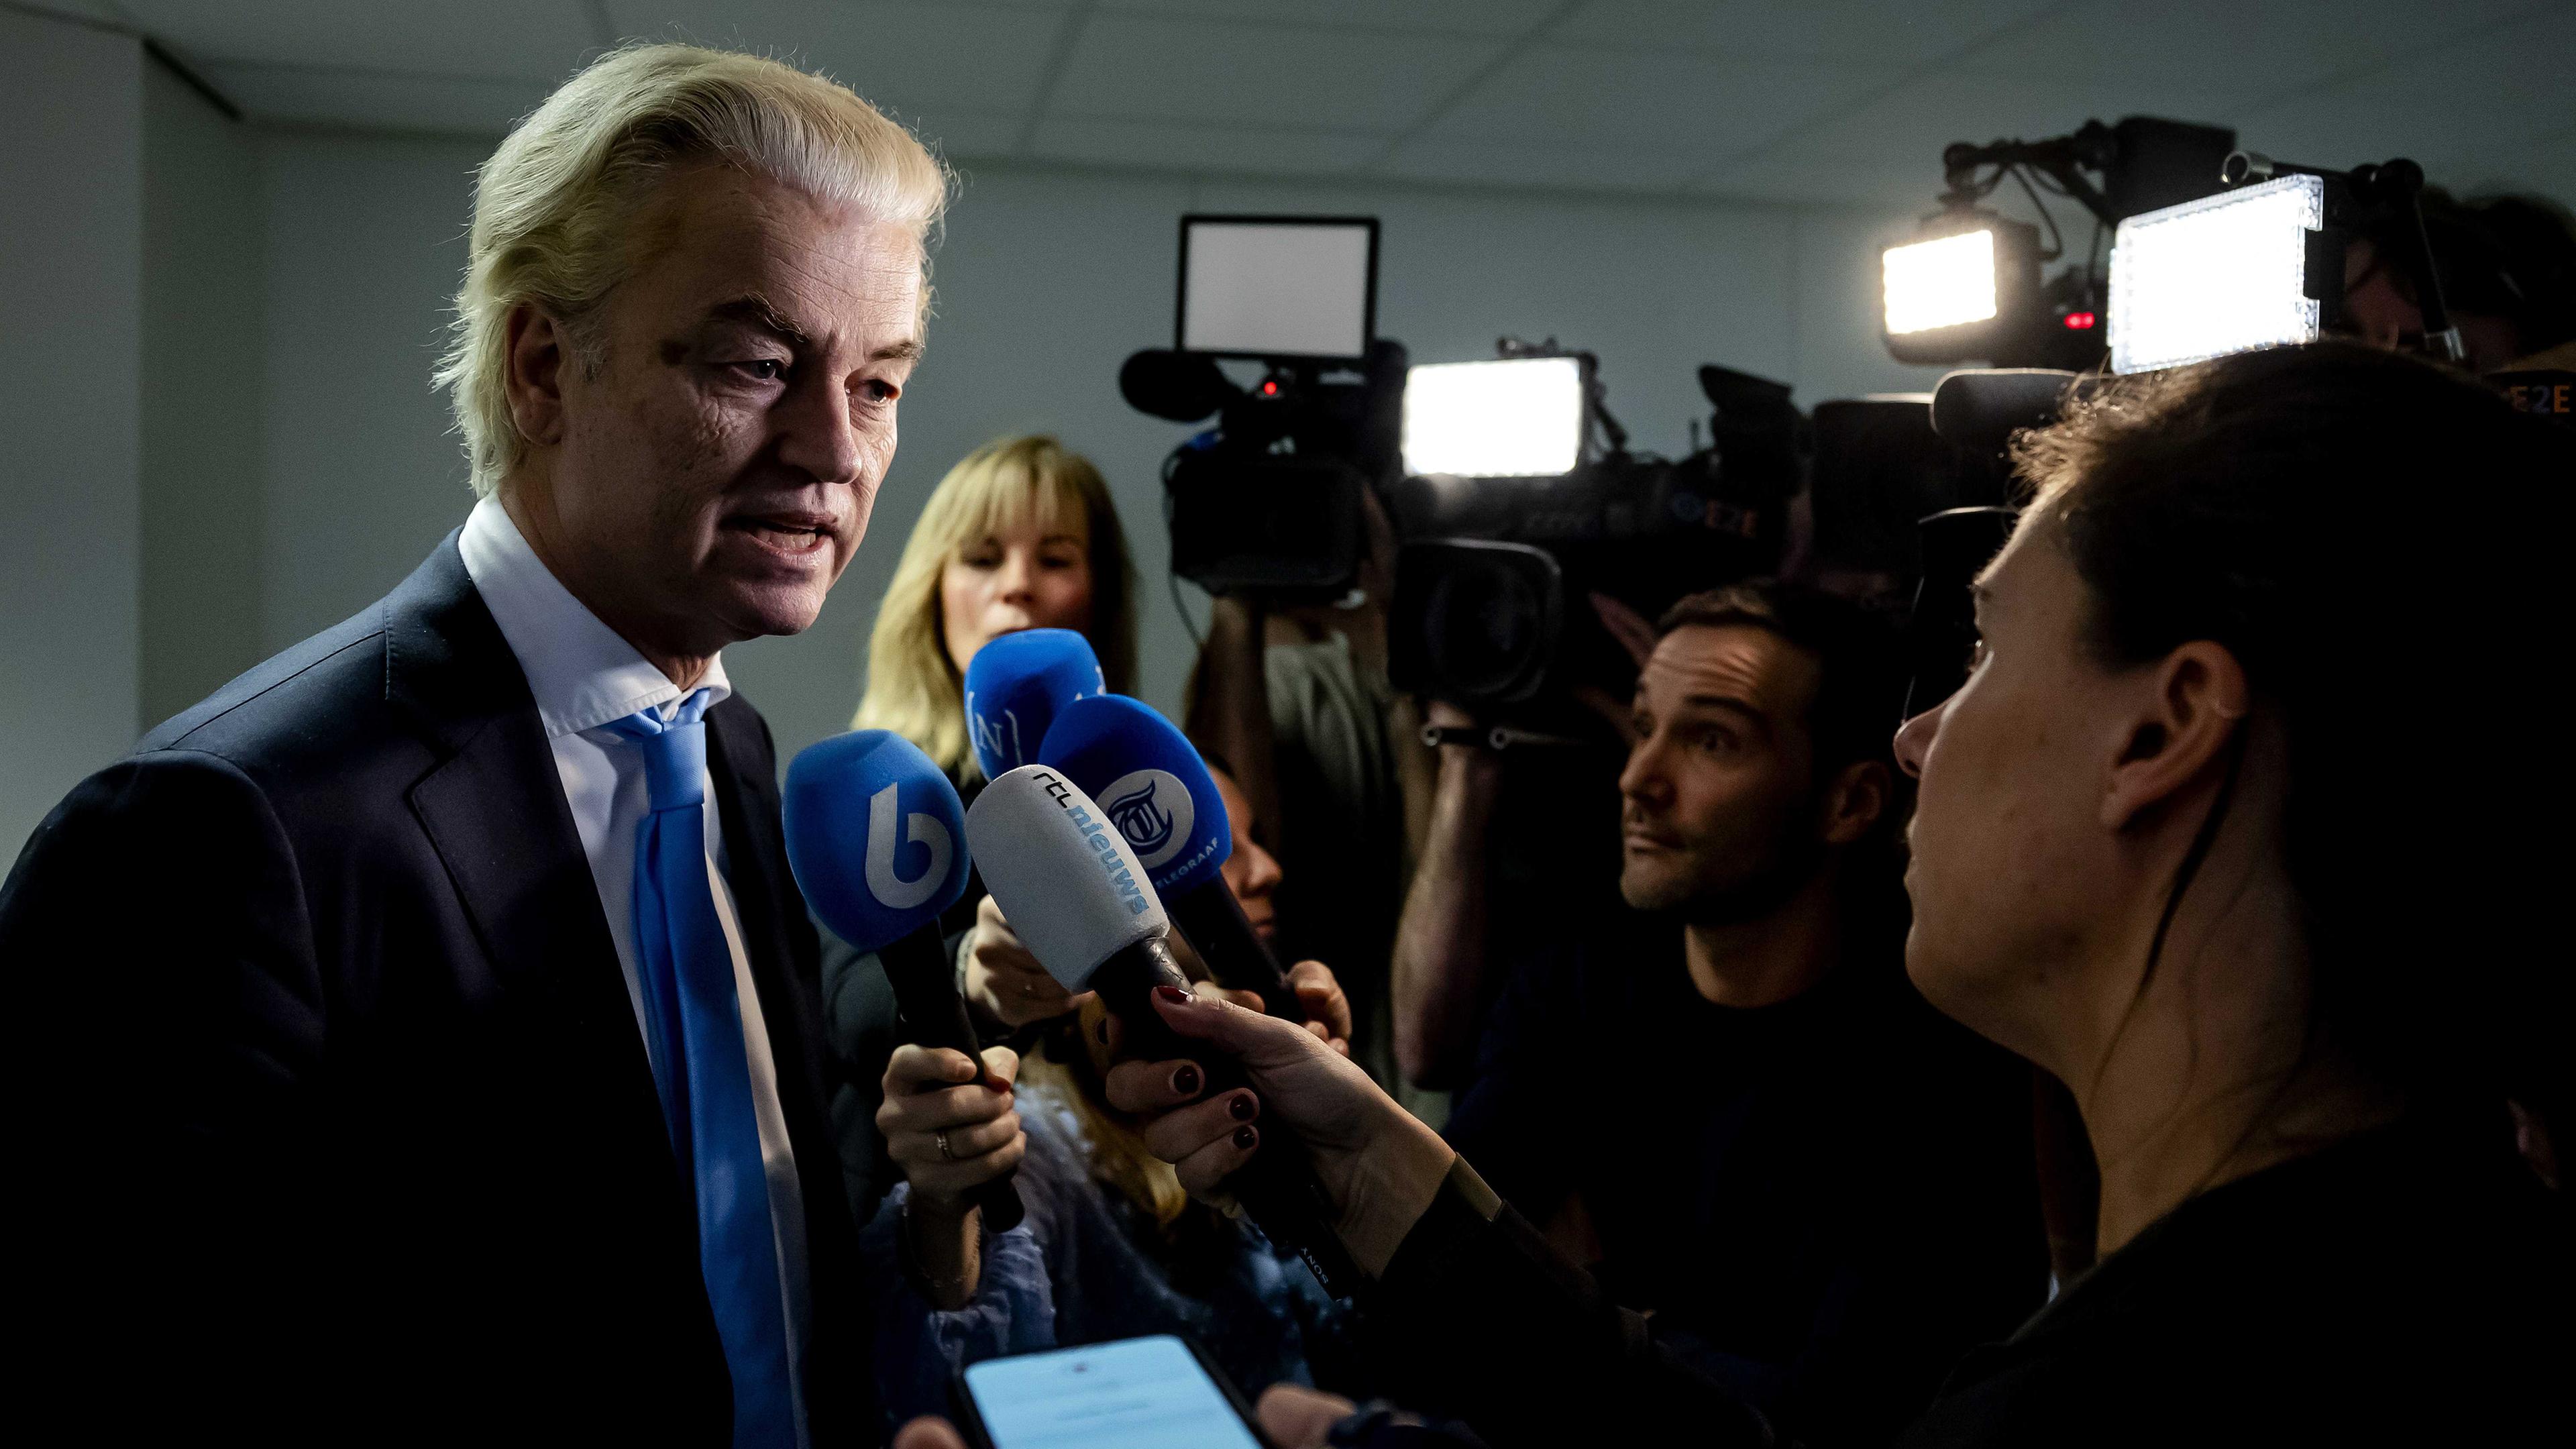 Niederlande, Den Haag: Geert Wilders, Vorsitzender der rechtspopulistischen Partei "Partij voor de Vrijheid" spricht mit Pressevertretern über den sofortigen Abgang von G. van Strien.